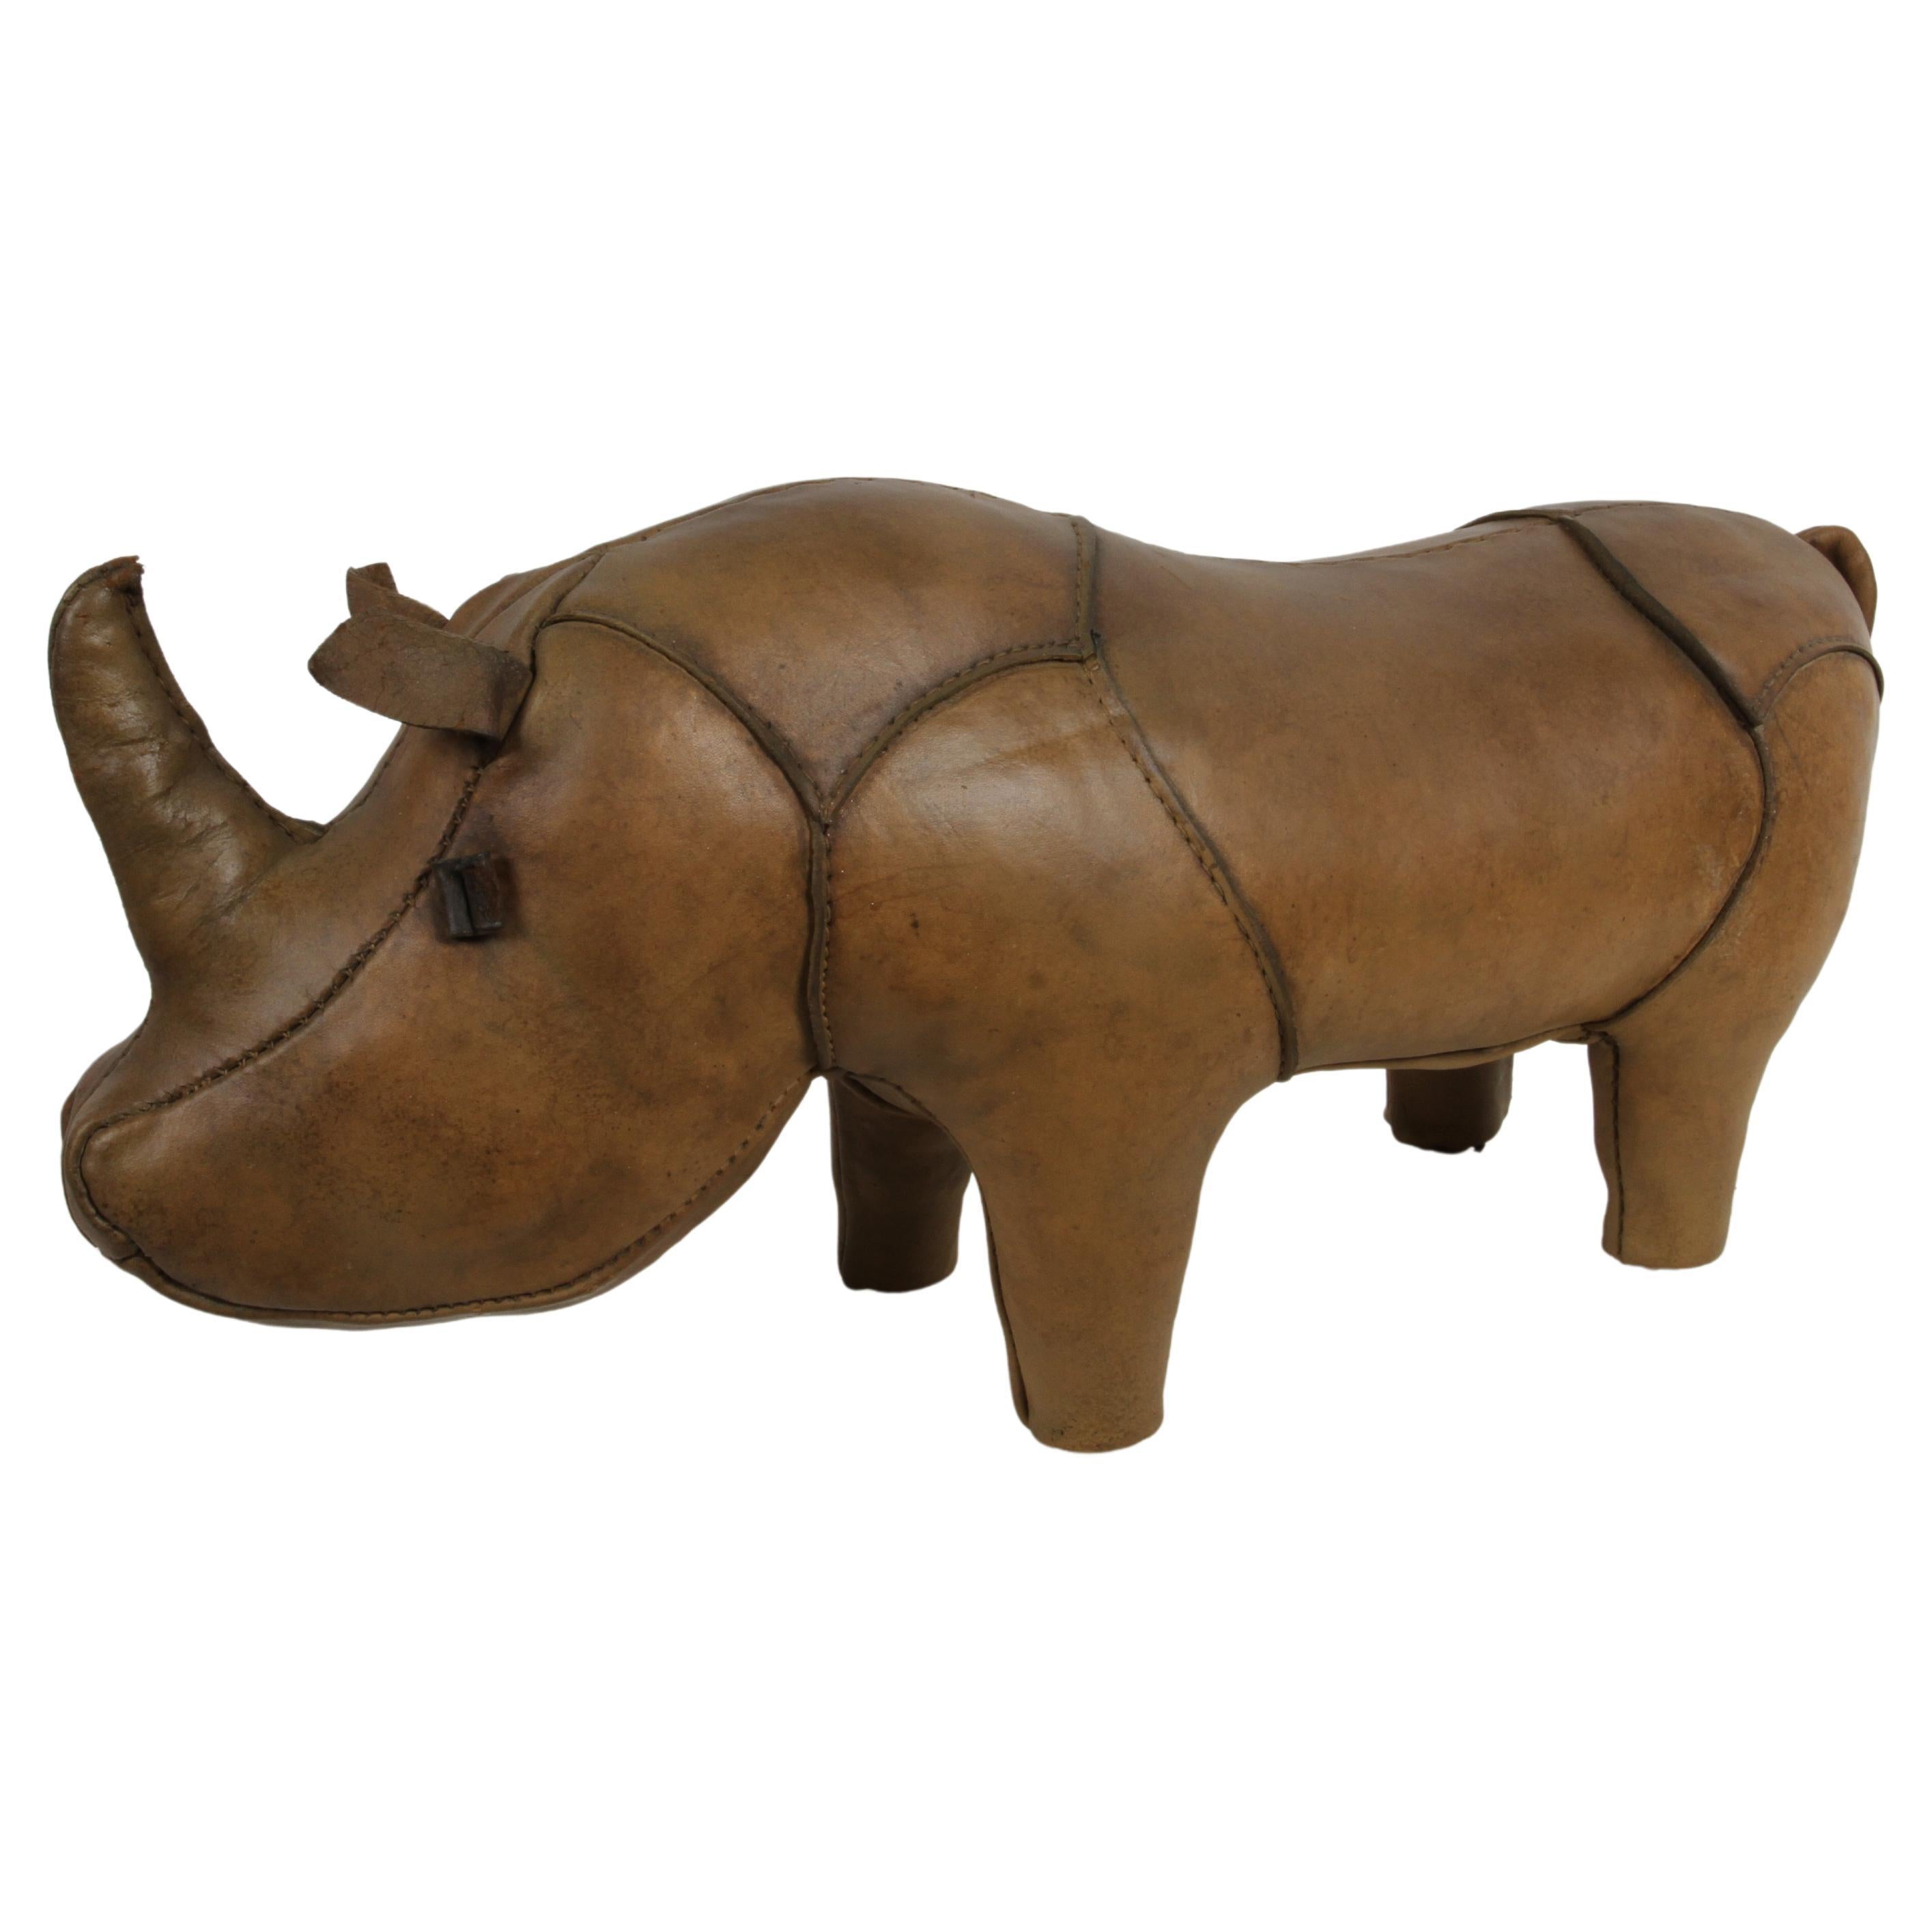 Dimitri Omersa Rhino Leder Rhino, vertrieben von Abercrombie & Fitch, 1960er Jahre, restauriert